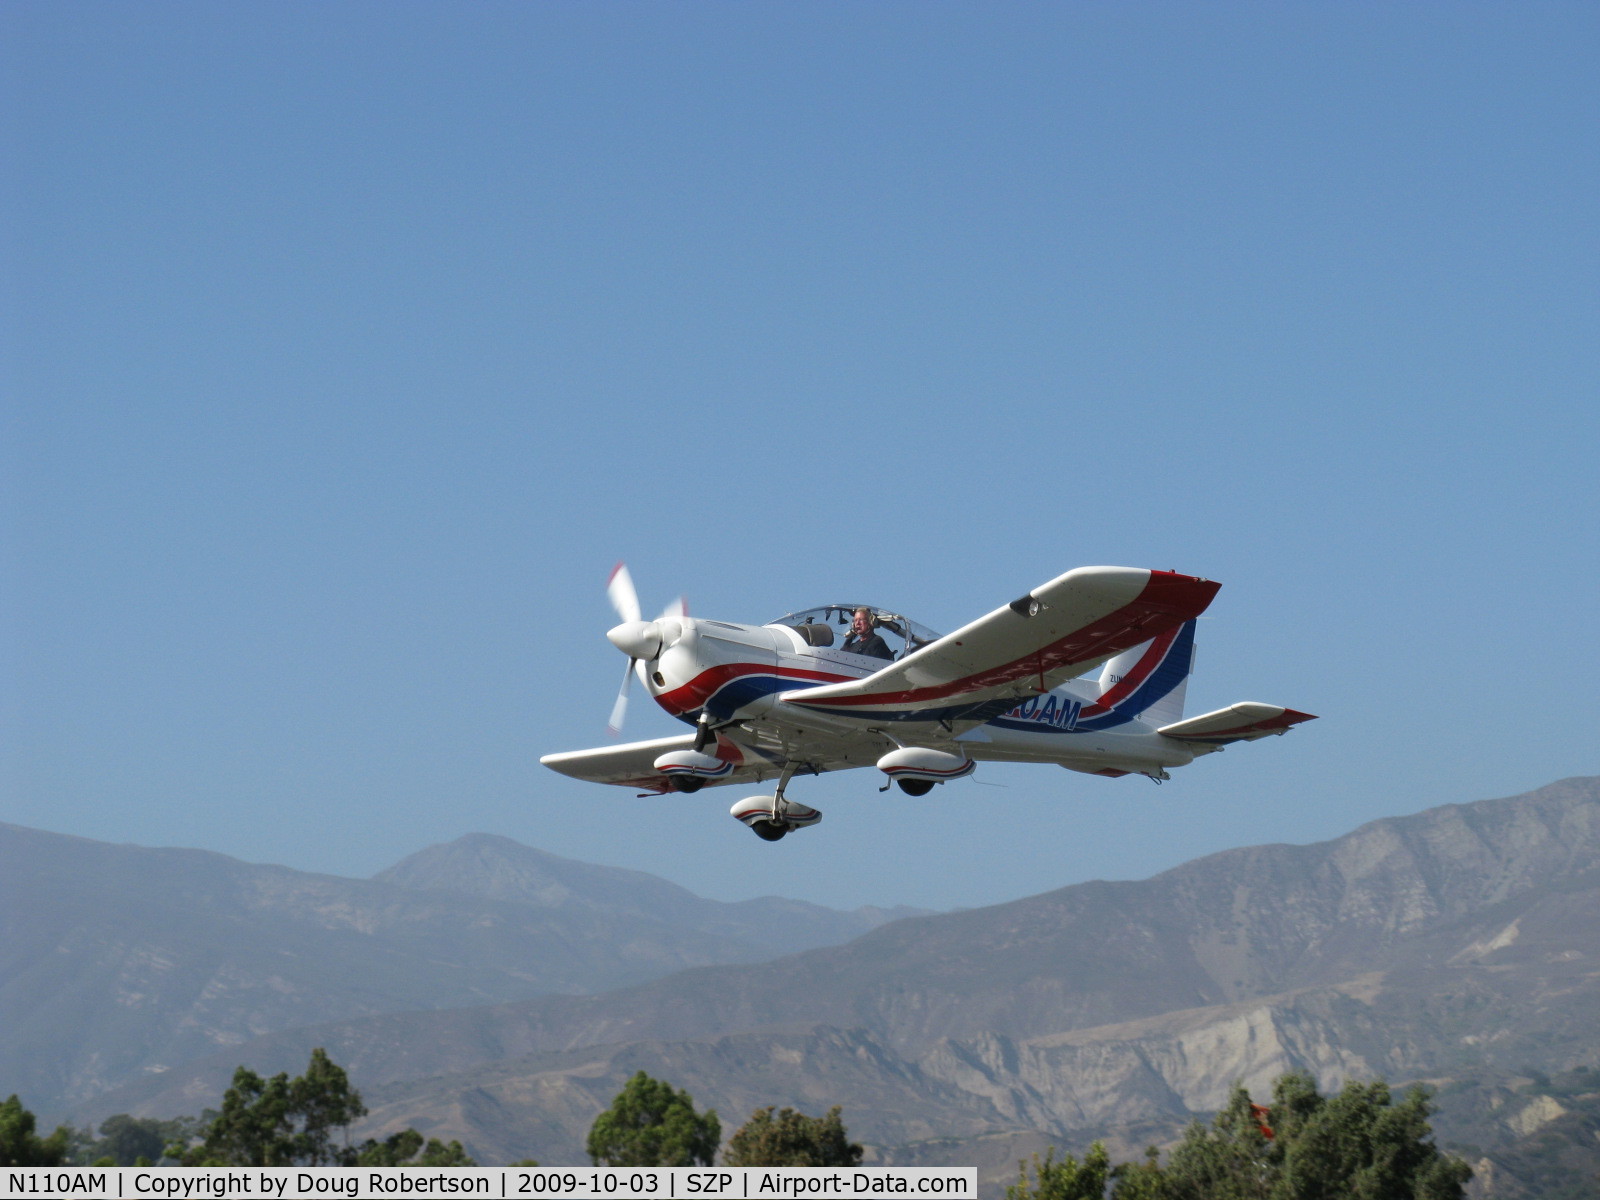 N110AM, 1996 Zlin Z-242L C/N 0727, 1996 Moravan Zlin 242L, Lycoming AEIO-360-B 200 Hp, fully aerobatic, takeoff climb Rwy 22